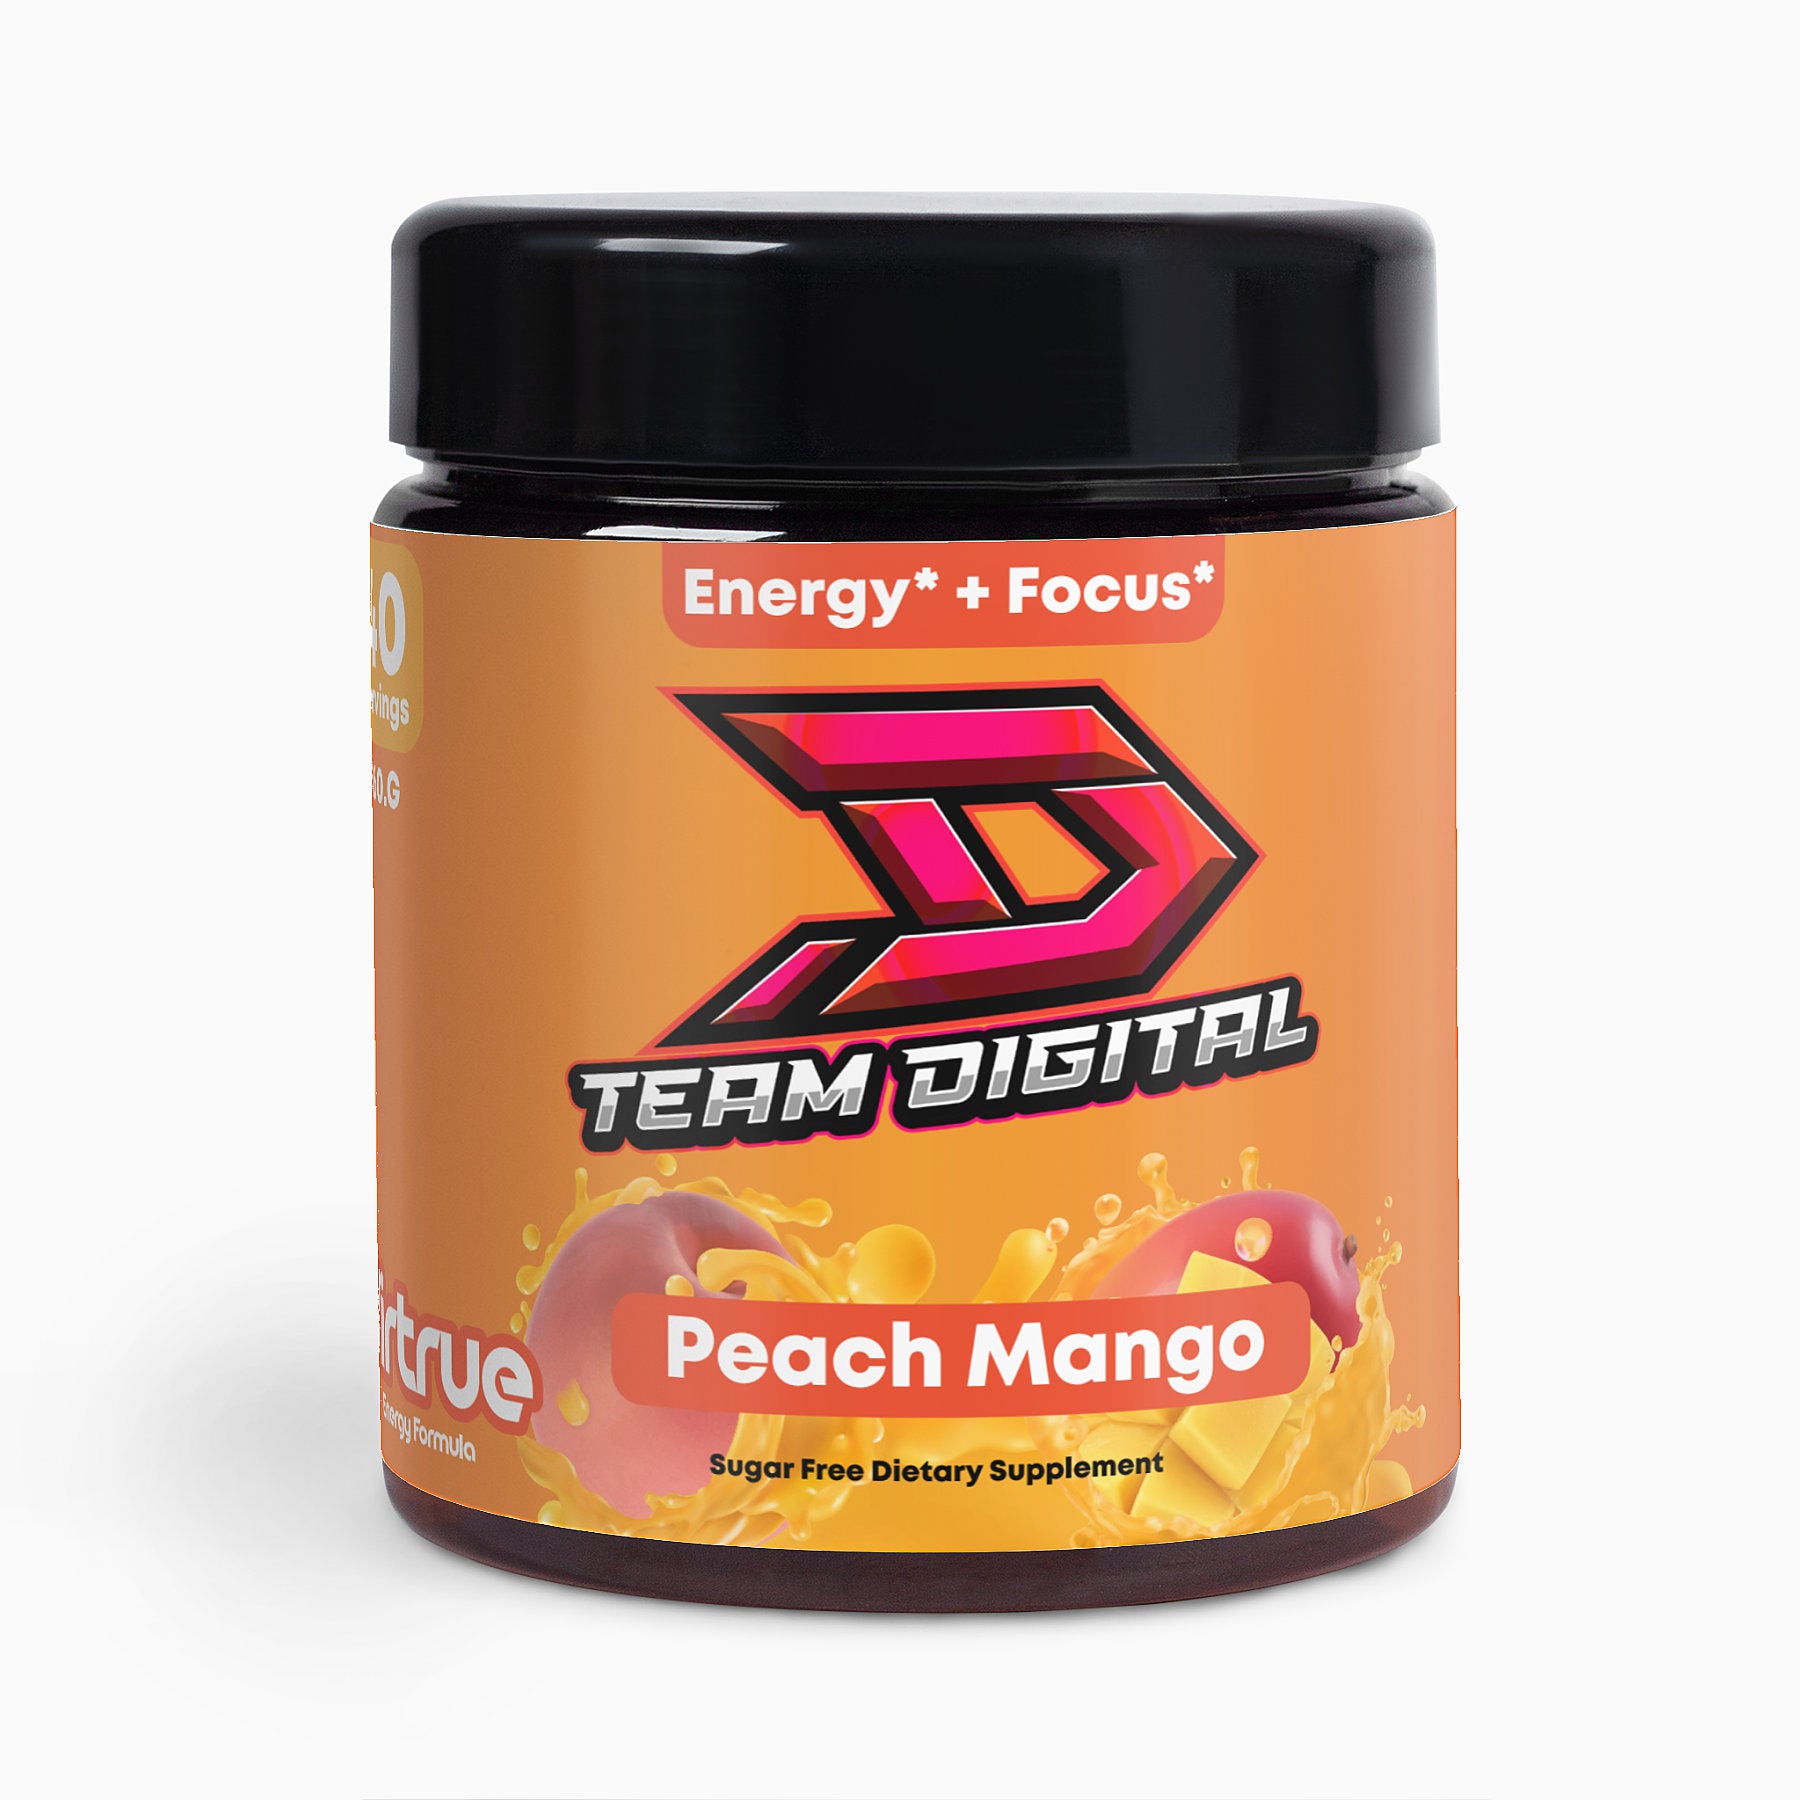 Digital Peach Mango Energy Formula - Inspired by Team Digital